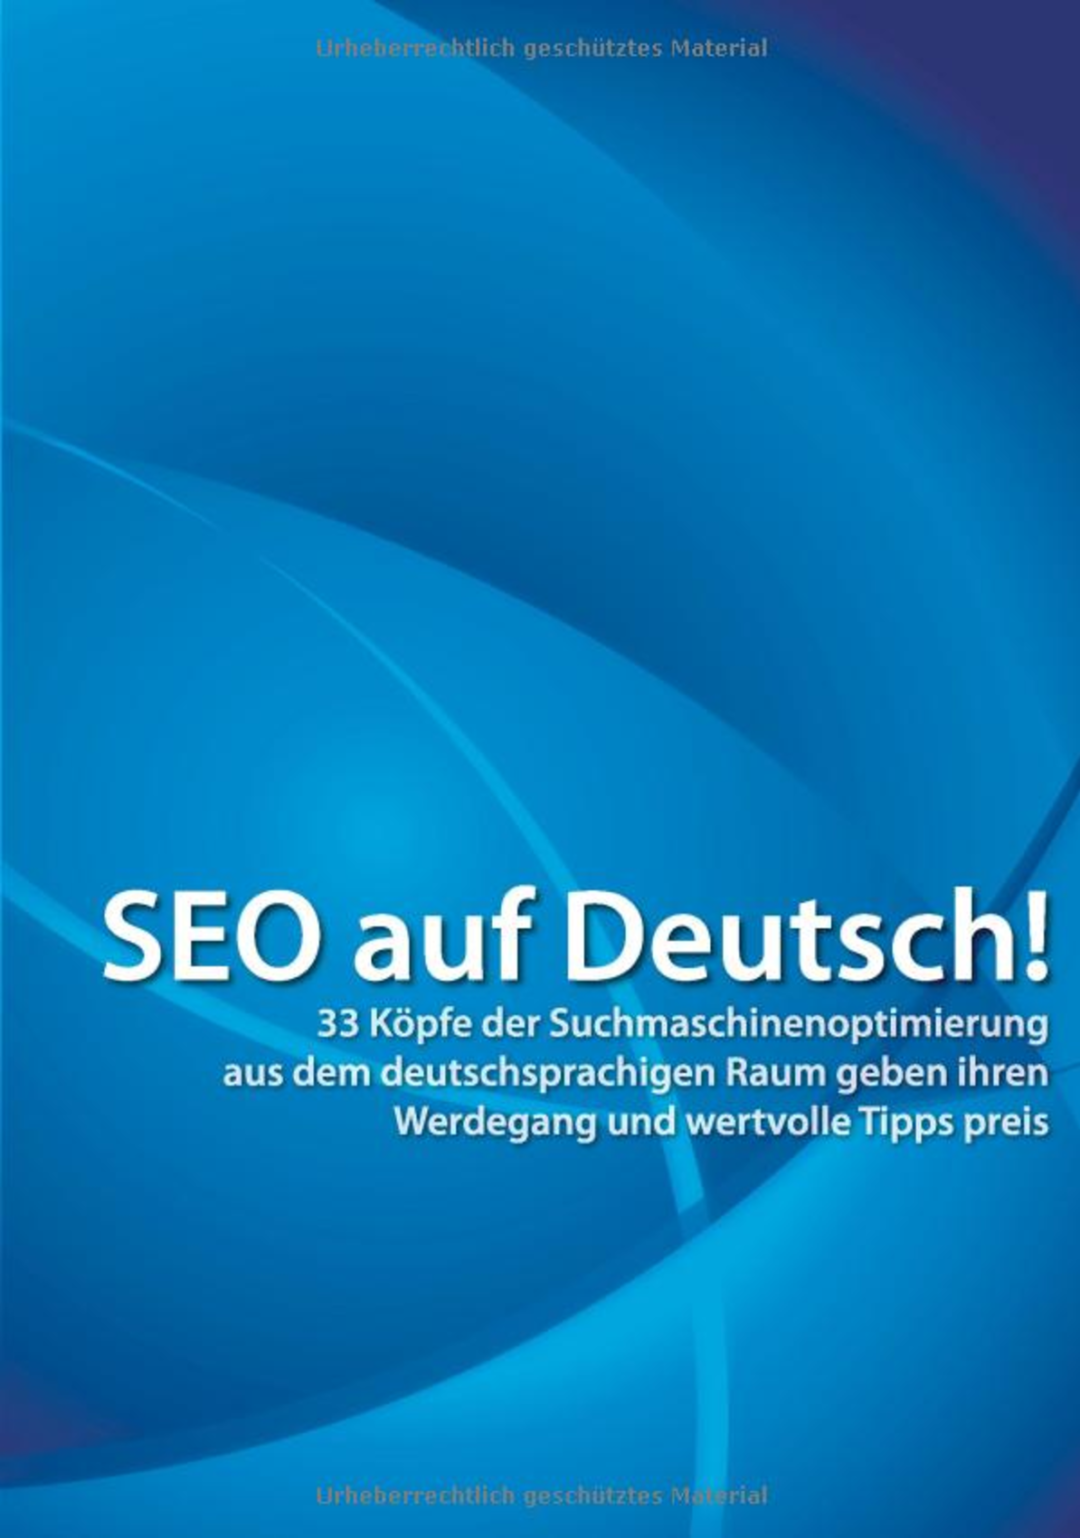 SEO auf Deutsch!: 33 Köpfe der Suchmaschinenoptimierung aus dem deutschsprachigen Raum geben ihren Werdegang und wertvolle Tipps preis